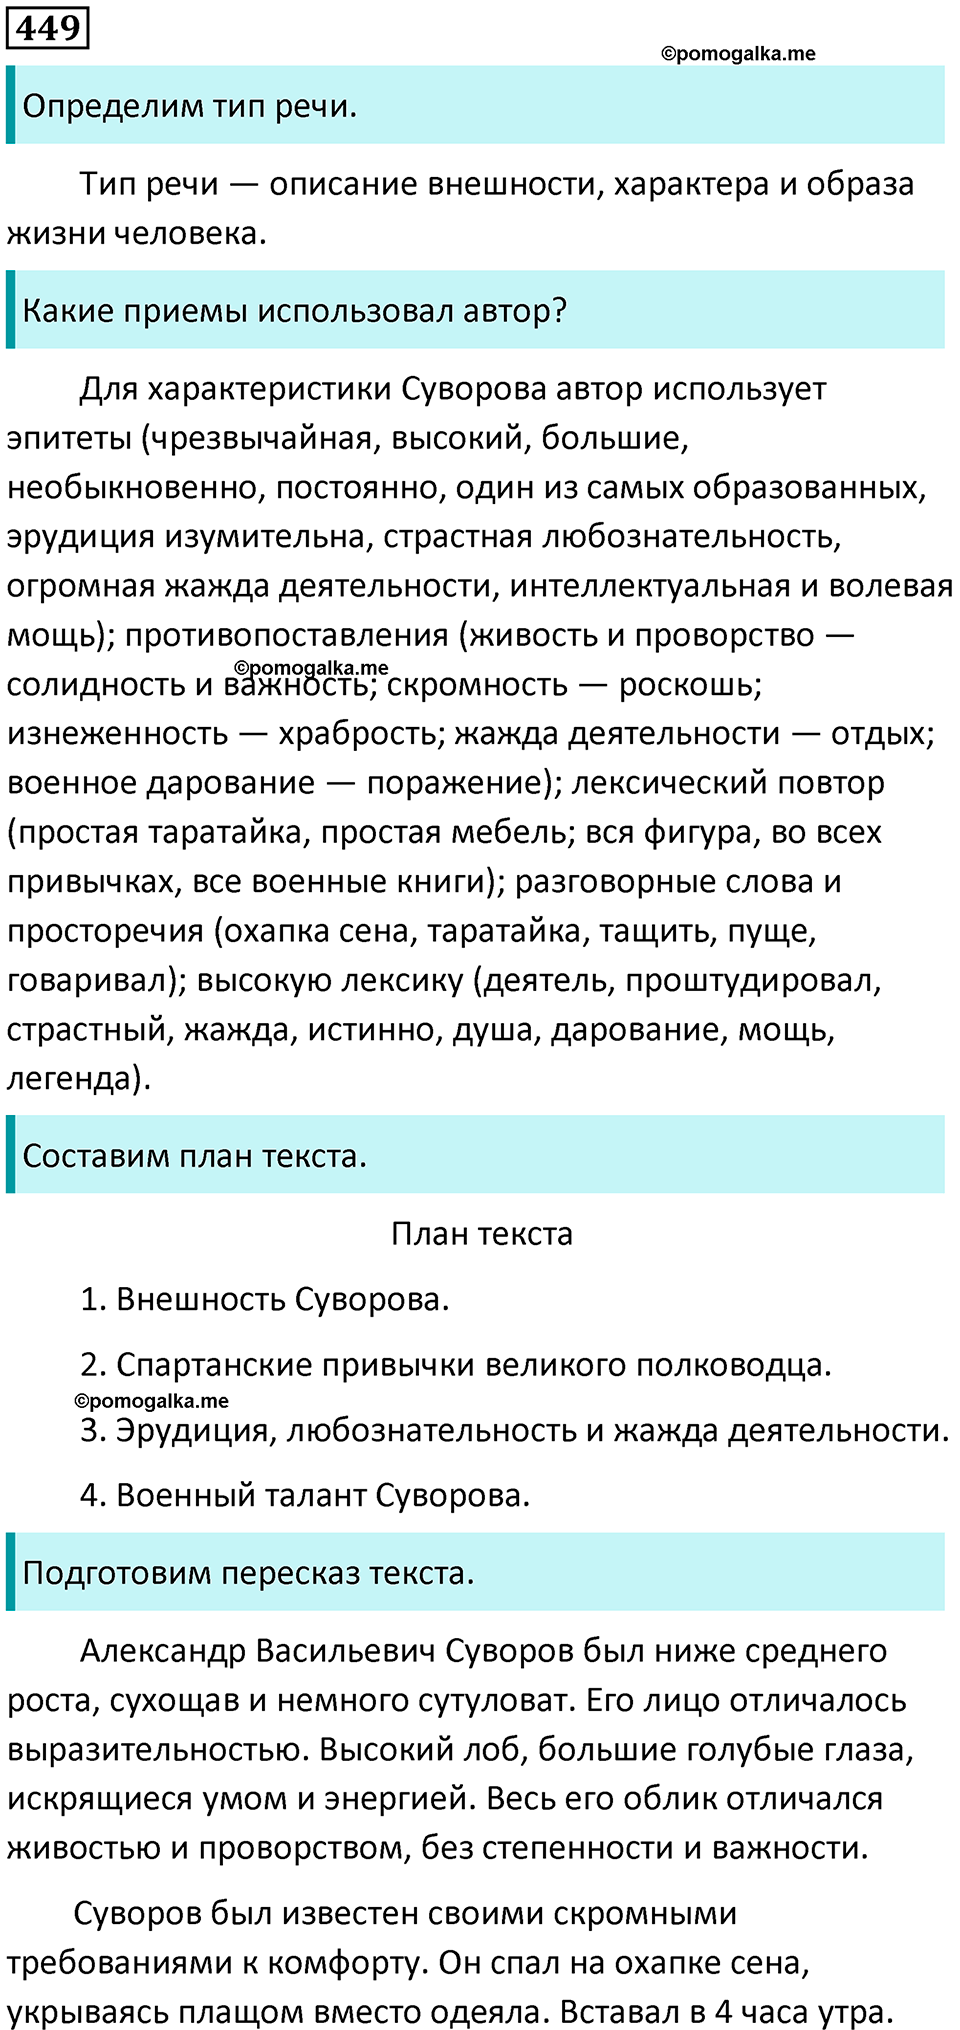 разбор упражнения №449 русский язык 8 класс Бархударов 2023 год